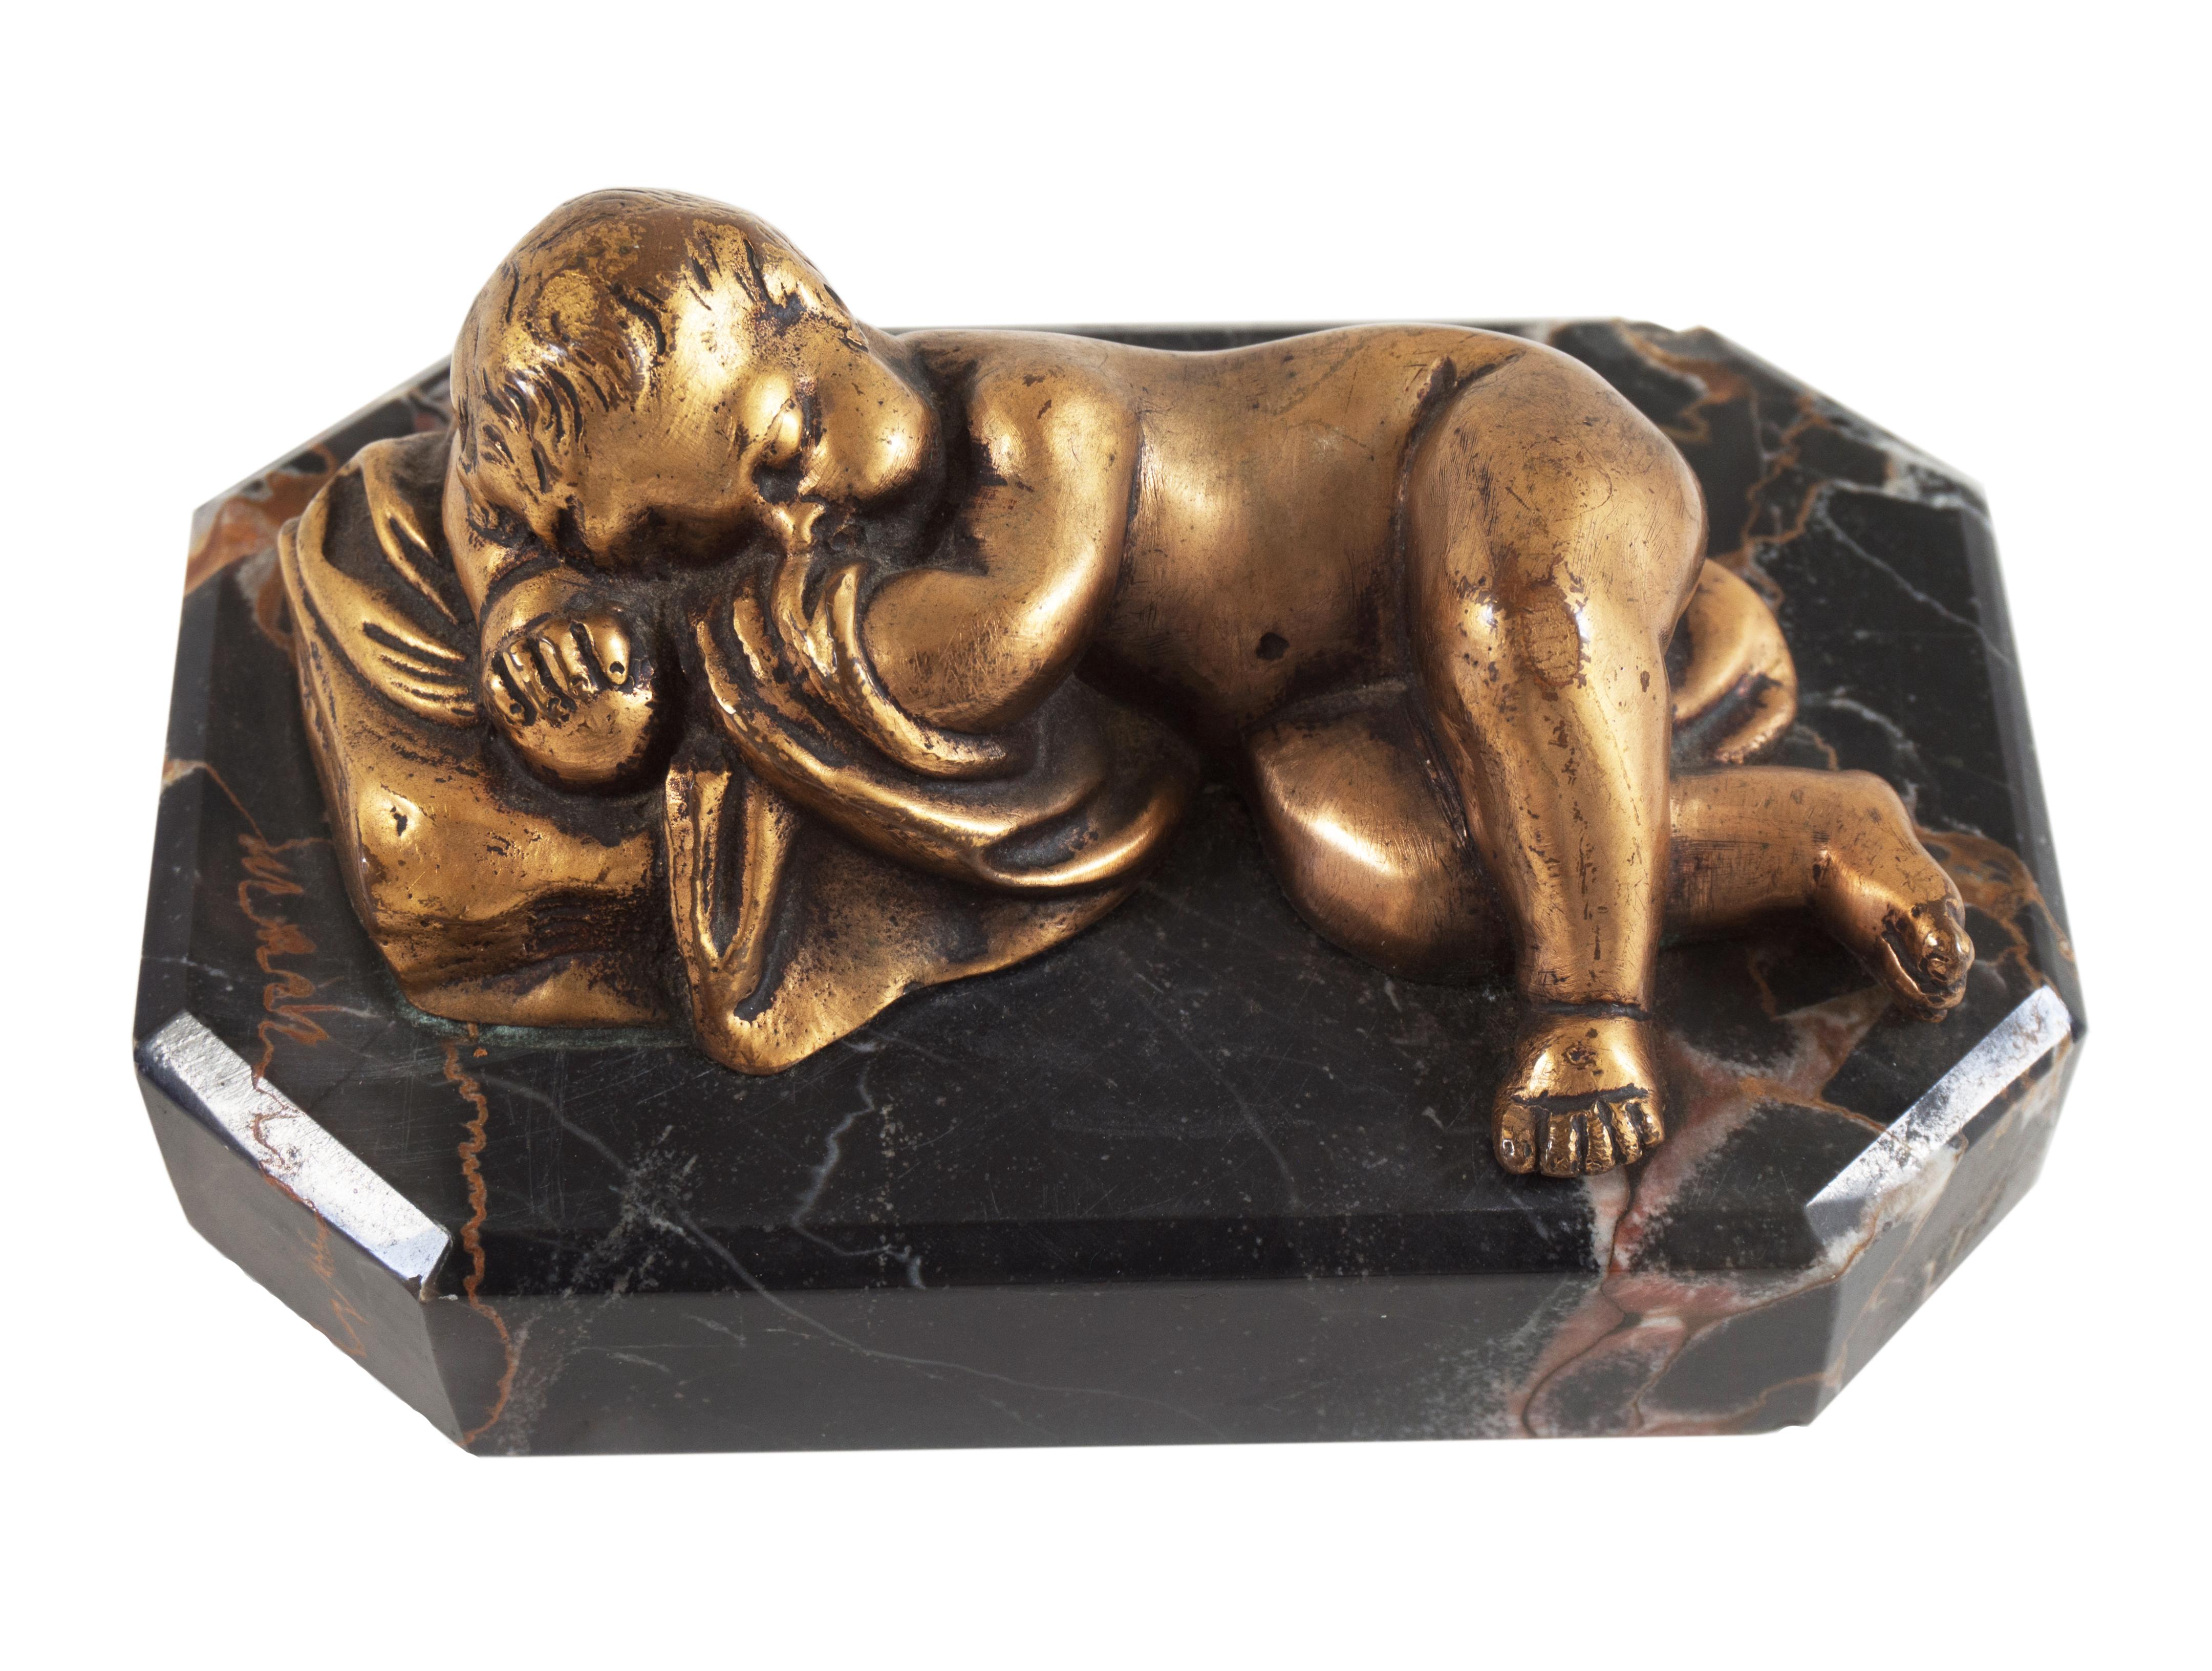  Kleine Beaux-Arts-Skulptur „Sleeping Cherub“ aus vergoldeter Bronze auf Portoro-Marmorsockel (Gold), Figurative Sculpture, von Unknown